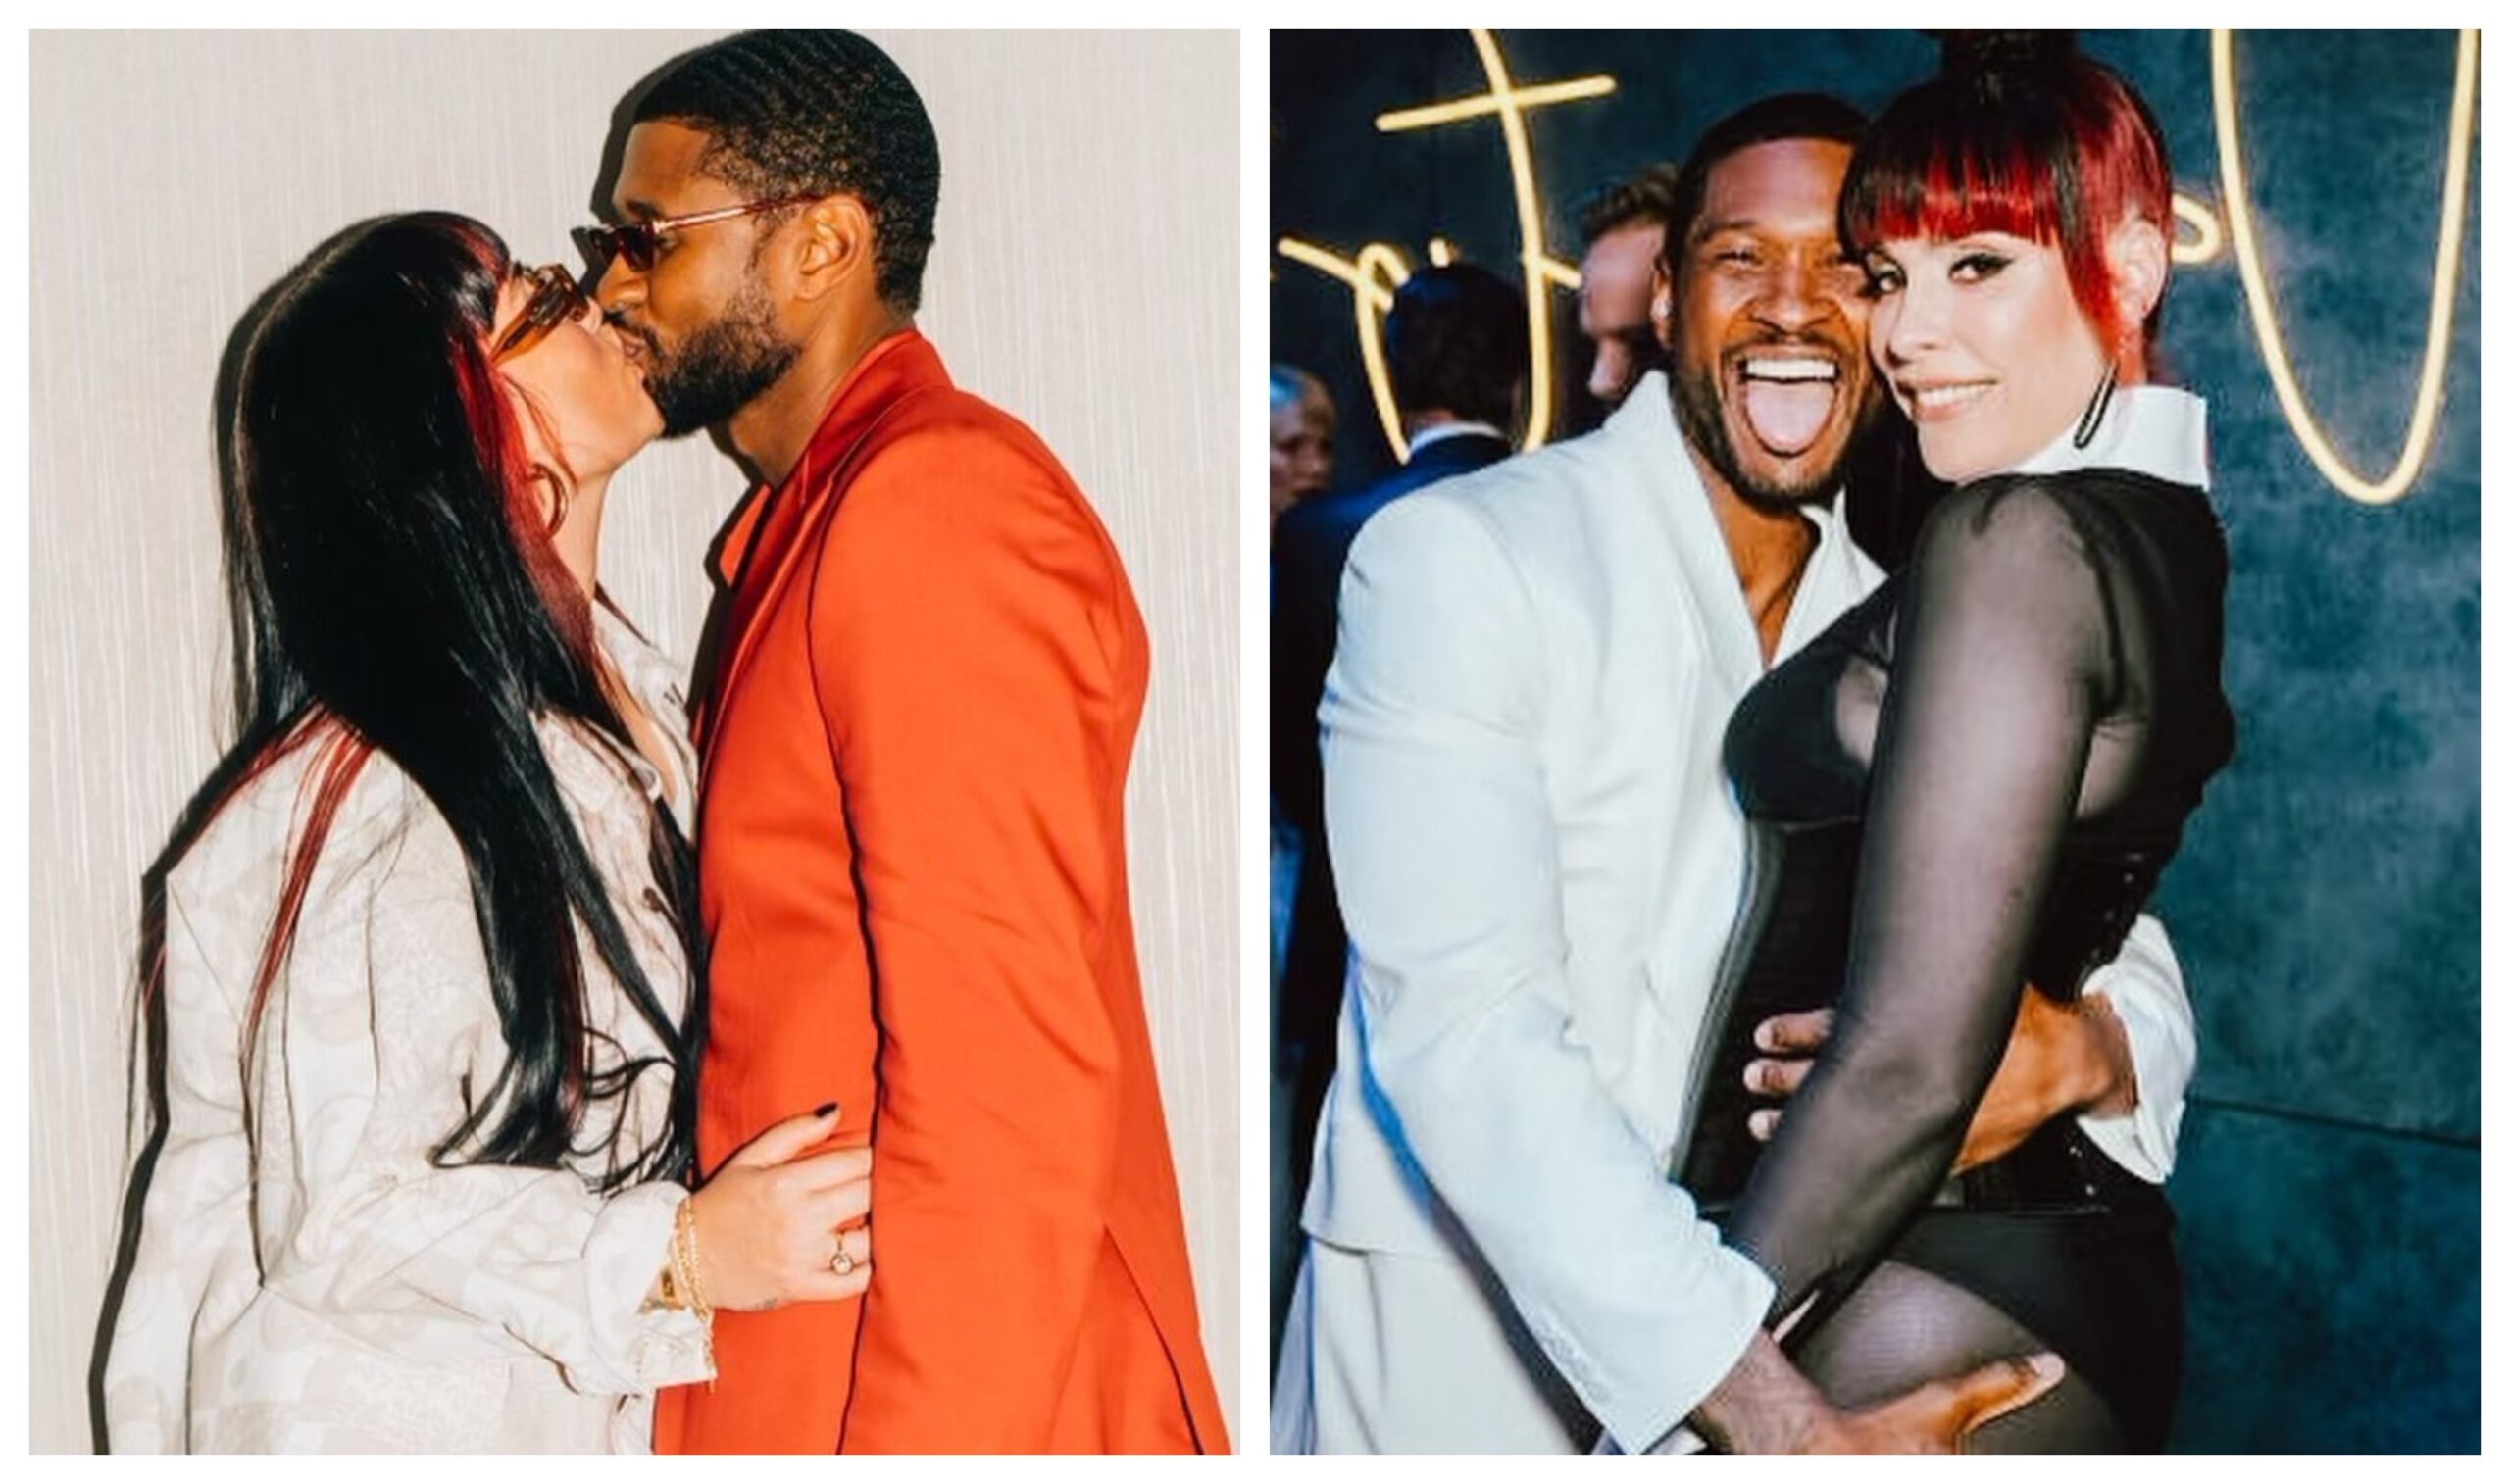 Usher, Jennifer Goicoechea married in Las Vegas after the Super Bowl